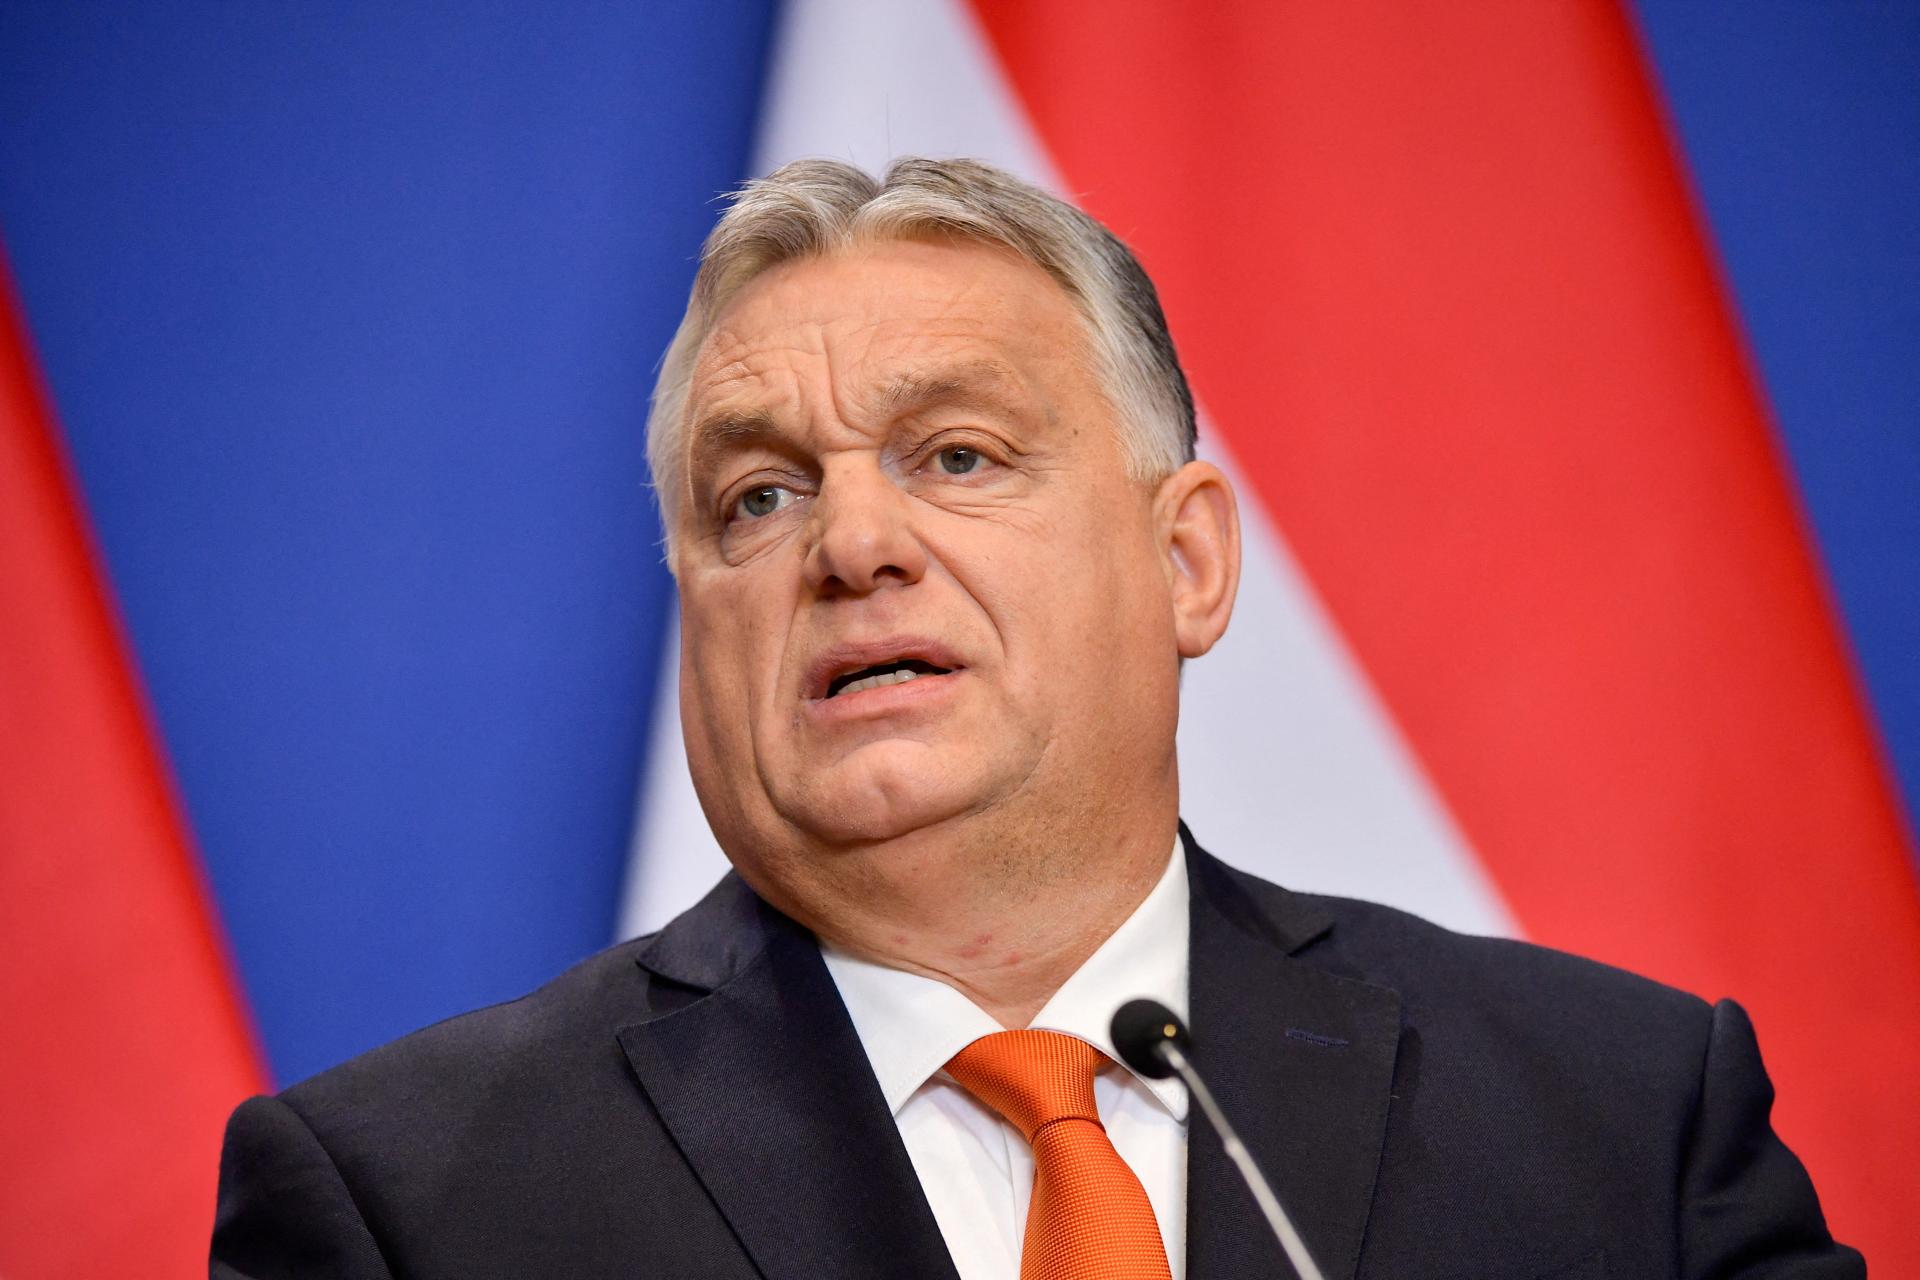 Orbán žiada okamžite pozastaviť právne konania voči Maďarsku